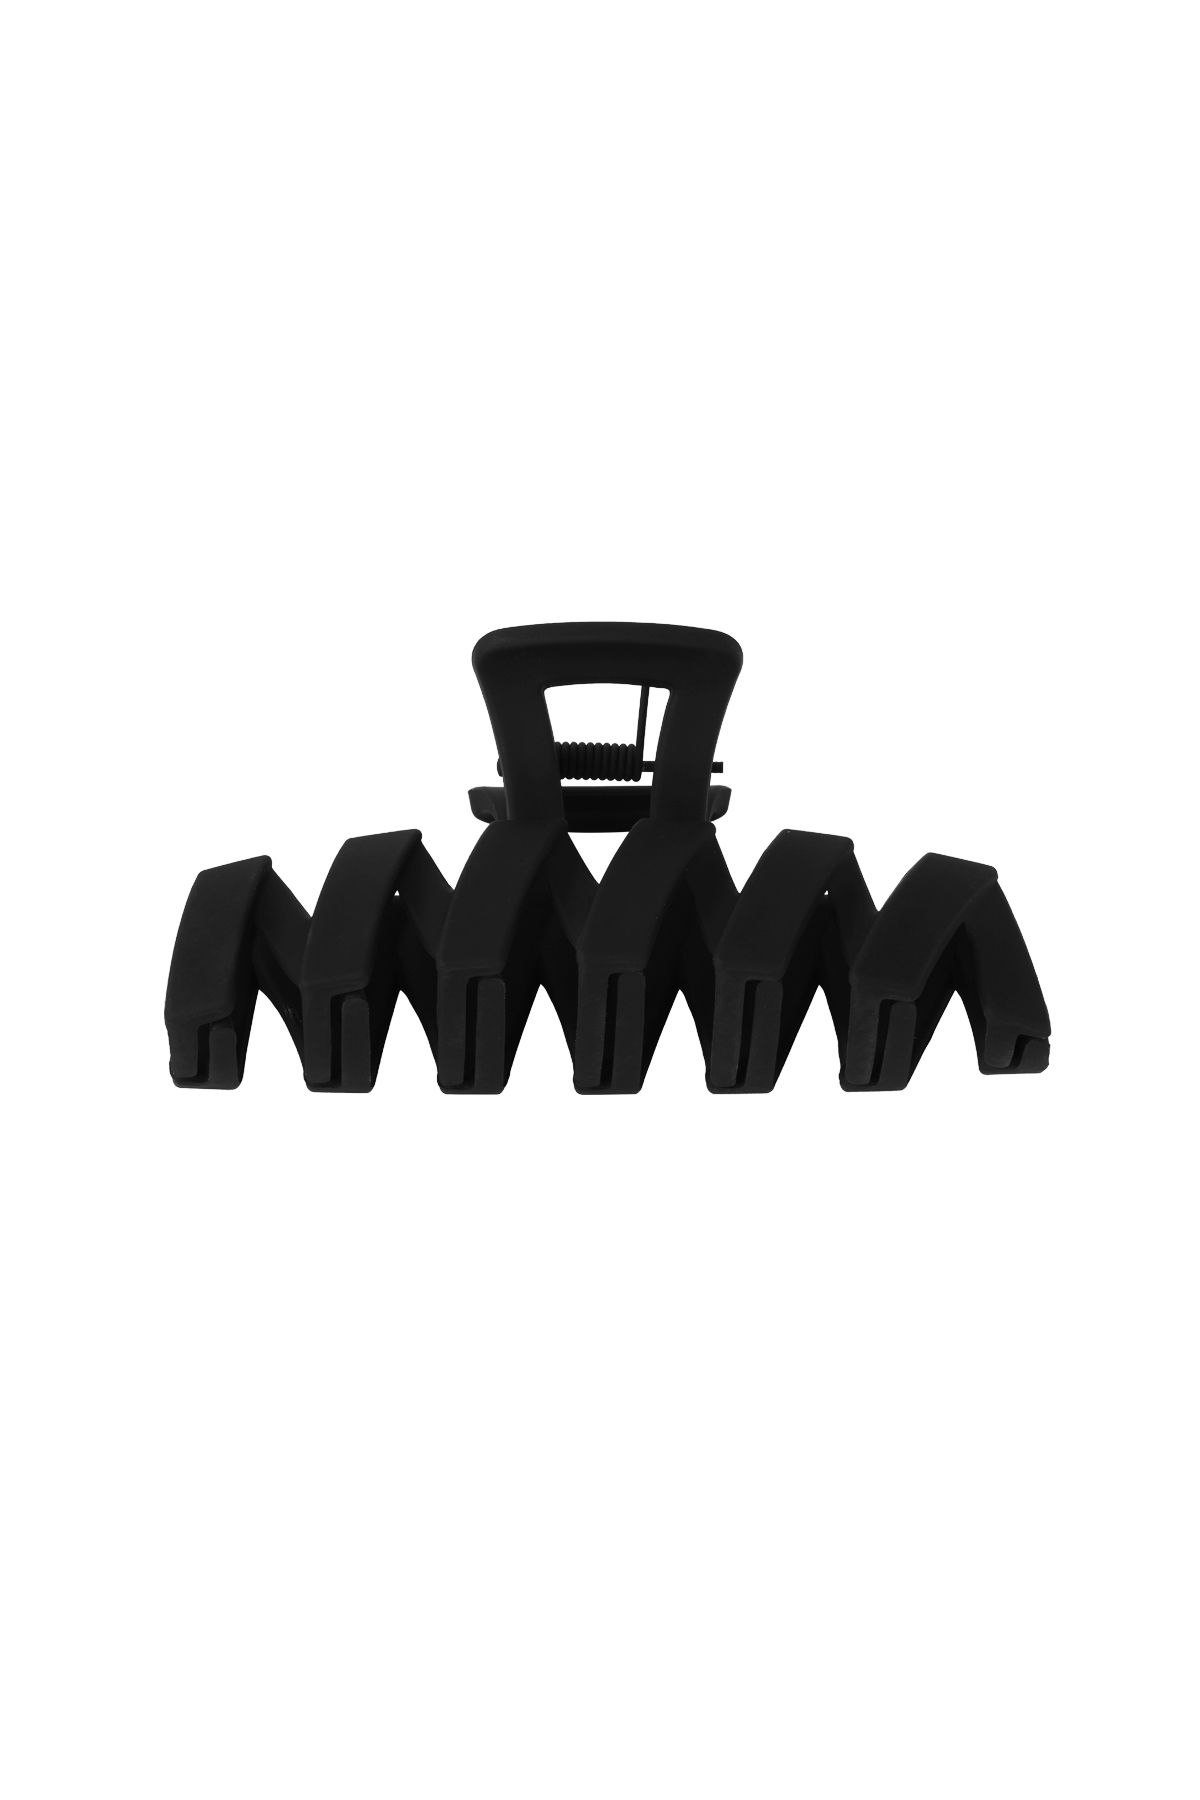 Haarspange Zickzack - schwarzer Kunststoff h5 